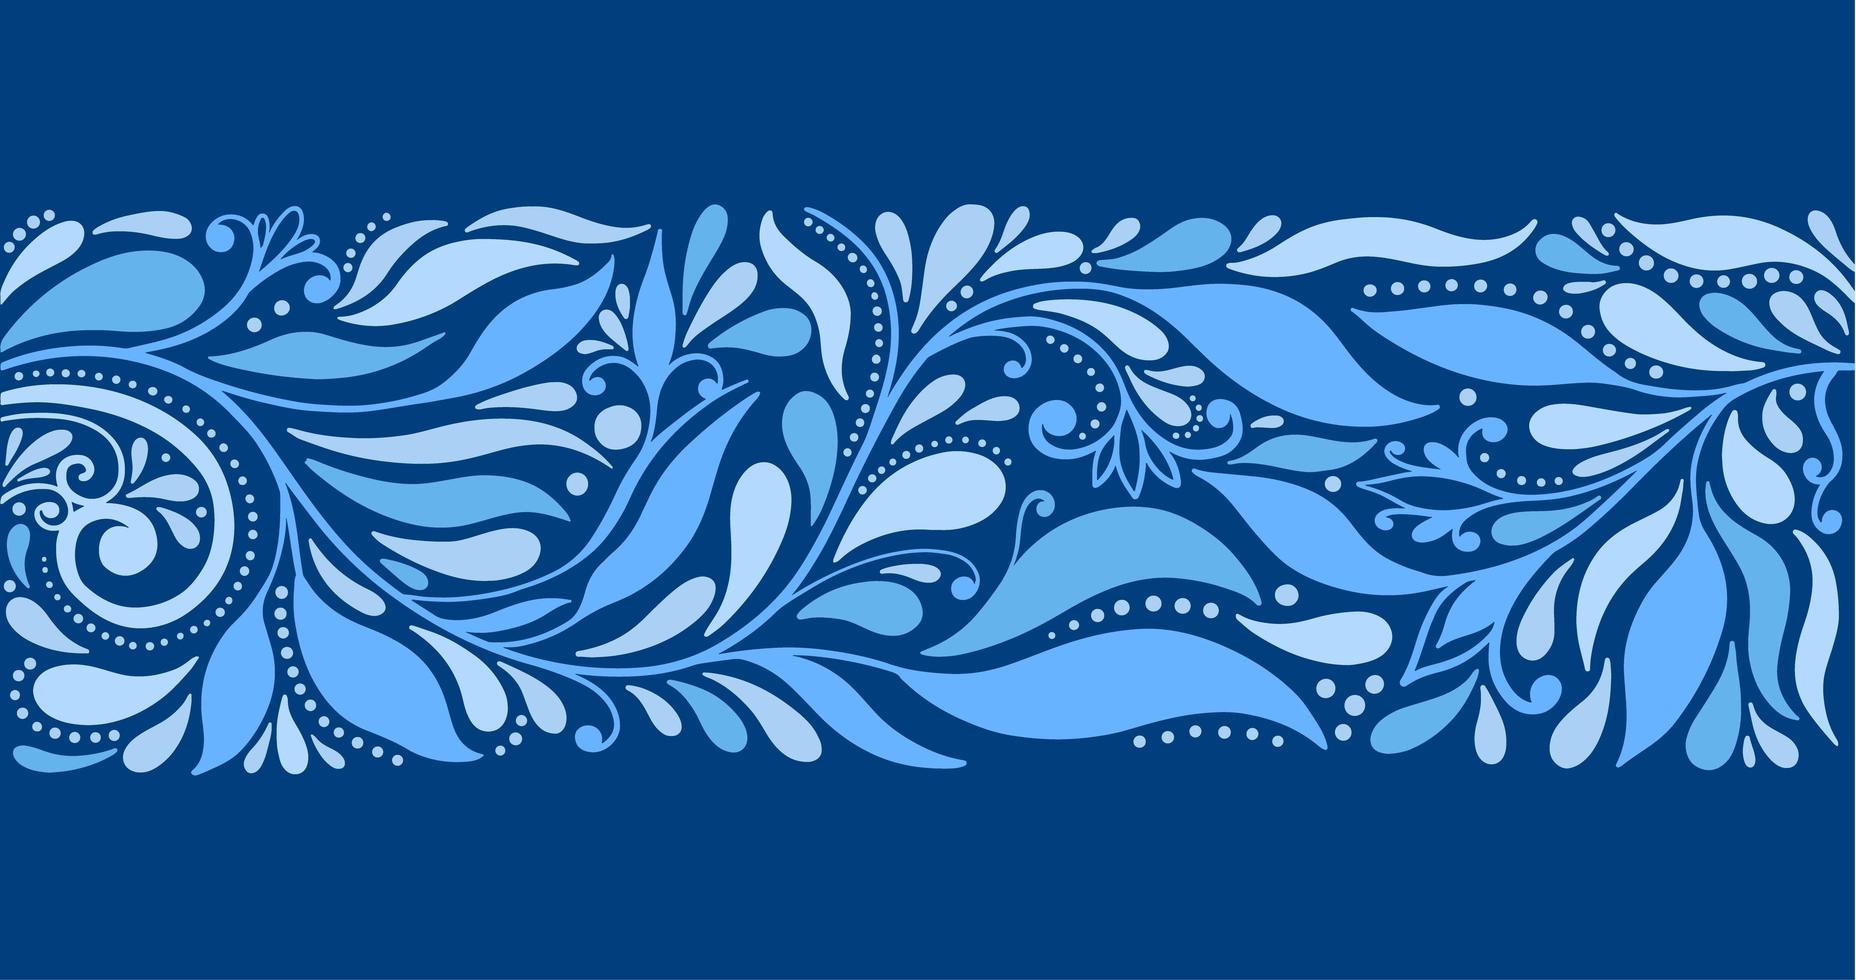 feuilles de bordure bleue abstraite élégante vecteur